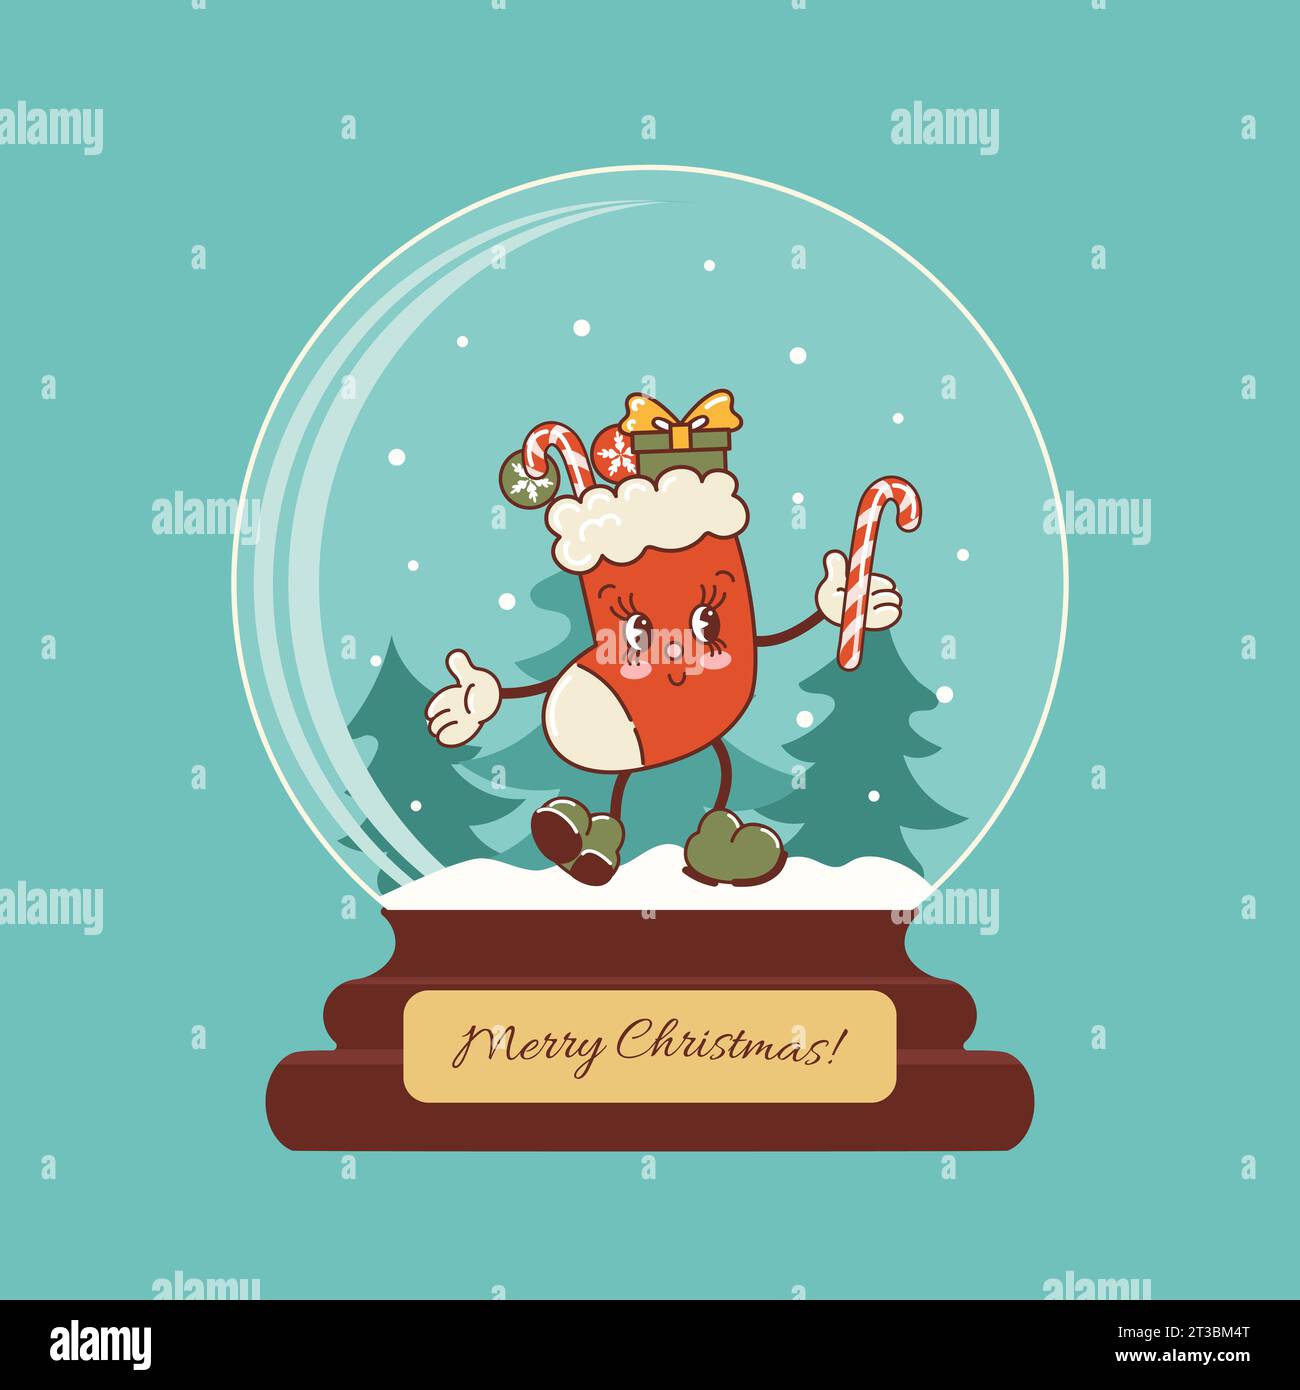 Sfera di vetro con neve. Buon calza natalizia, simpatico personaggio danzante. Lecca-lecca, regali, canna da zucchero. Stile classico e alla moda dei cartoni animati retrò. Vintage ho Illustrazione Vettoriale